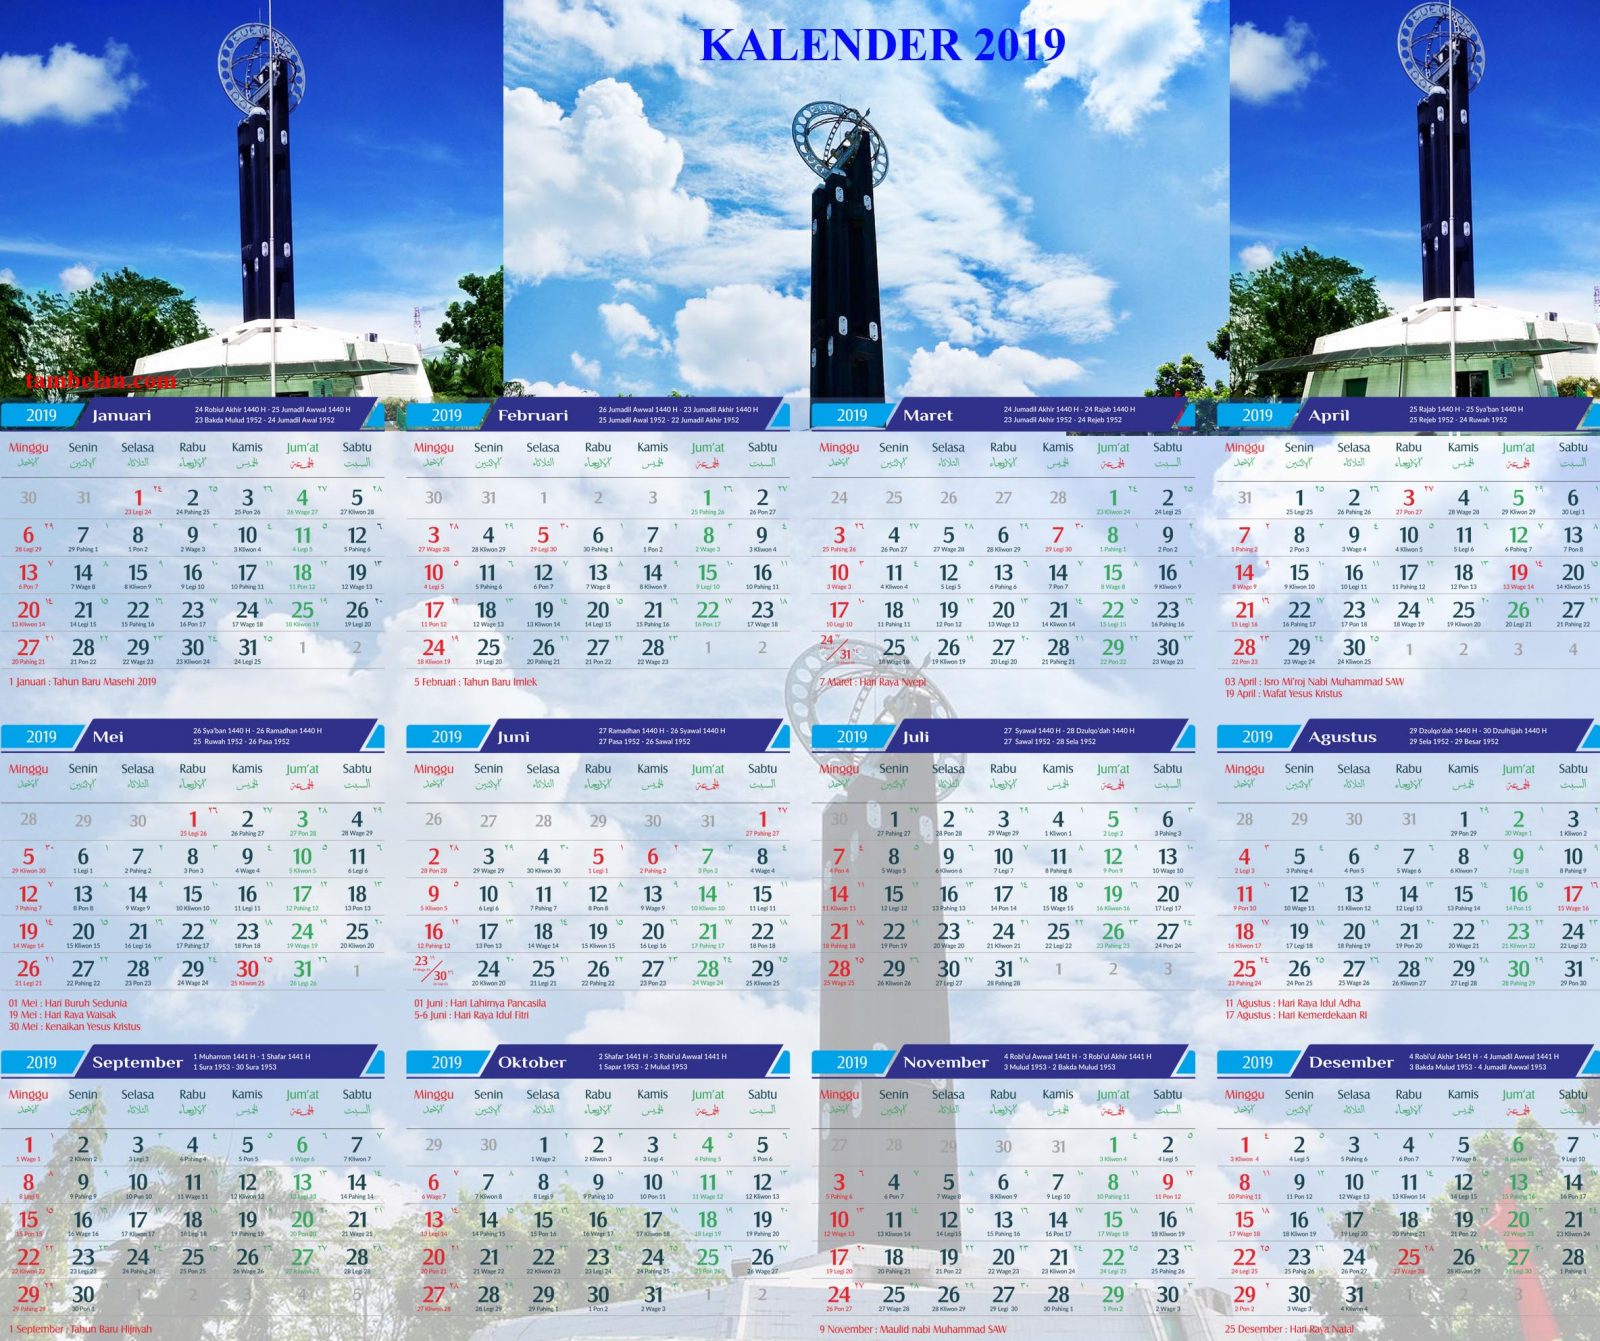 Kalender 2019 pdf indonesia islam jawa lengkap gratis 